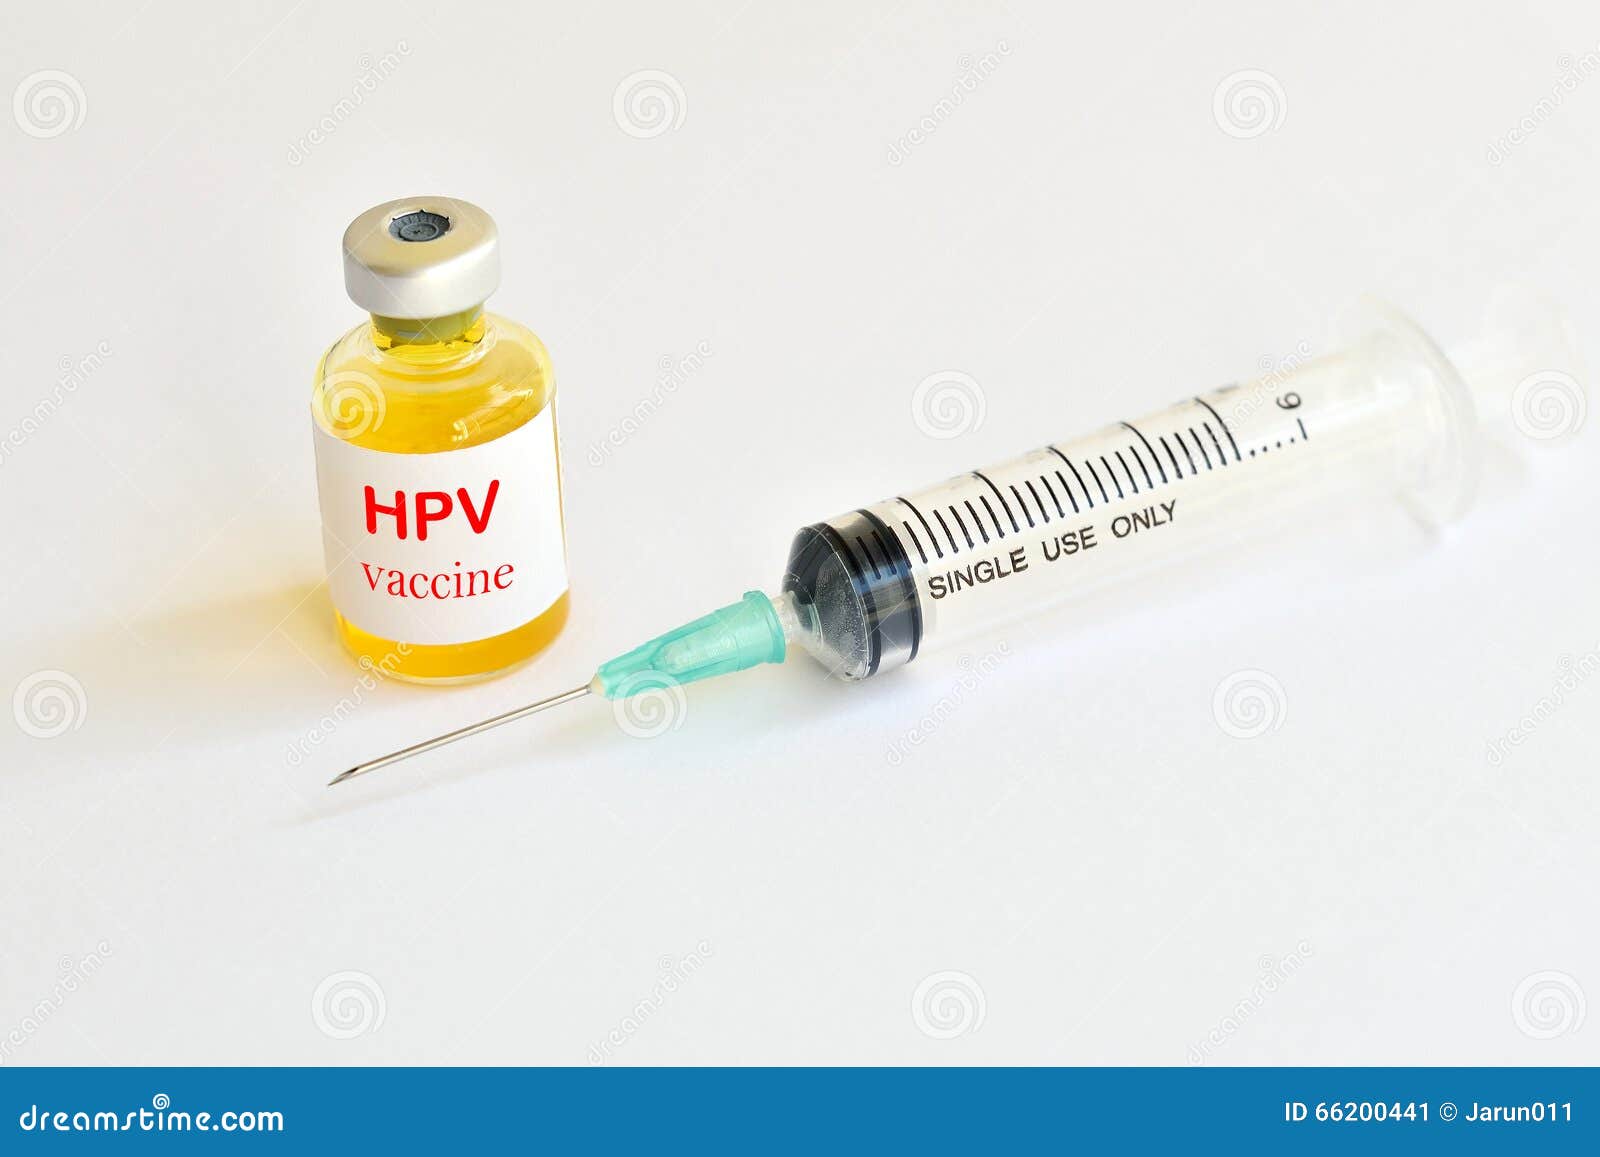 human papillomavirus hpv immunisation)